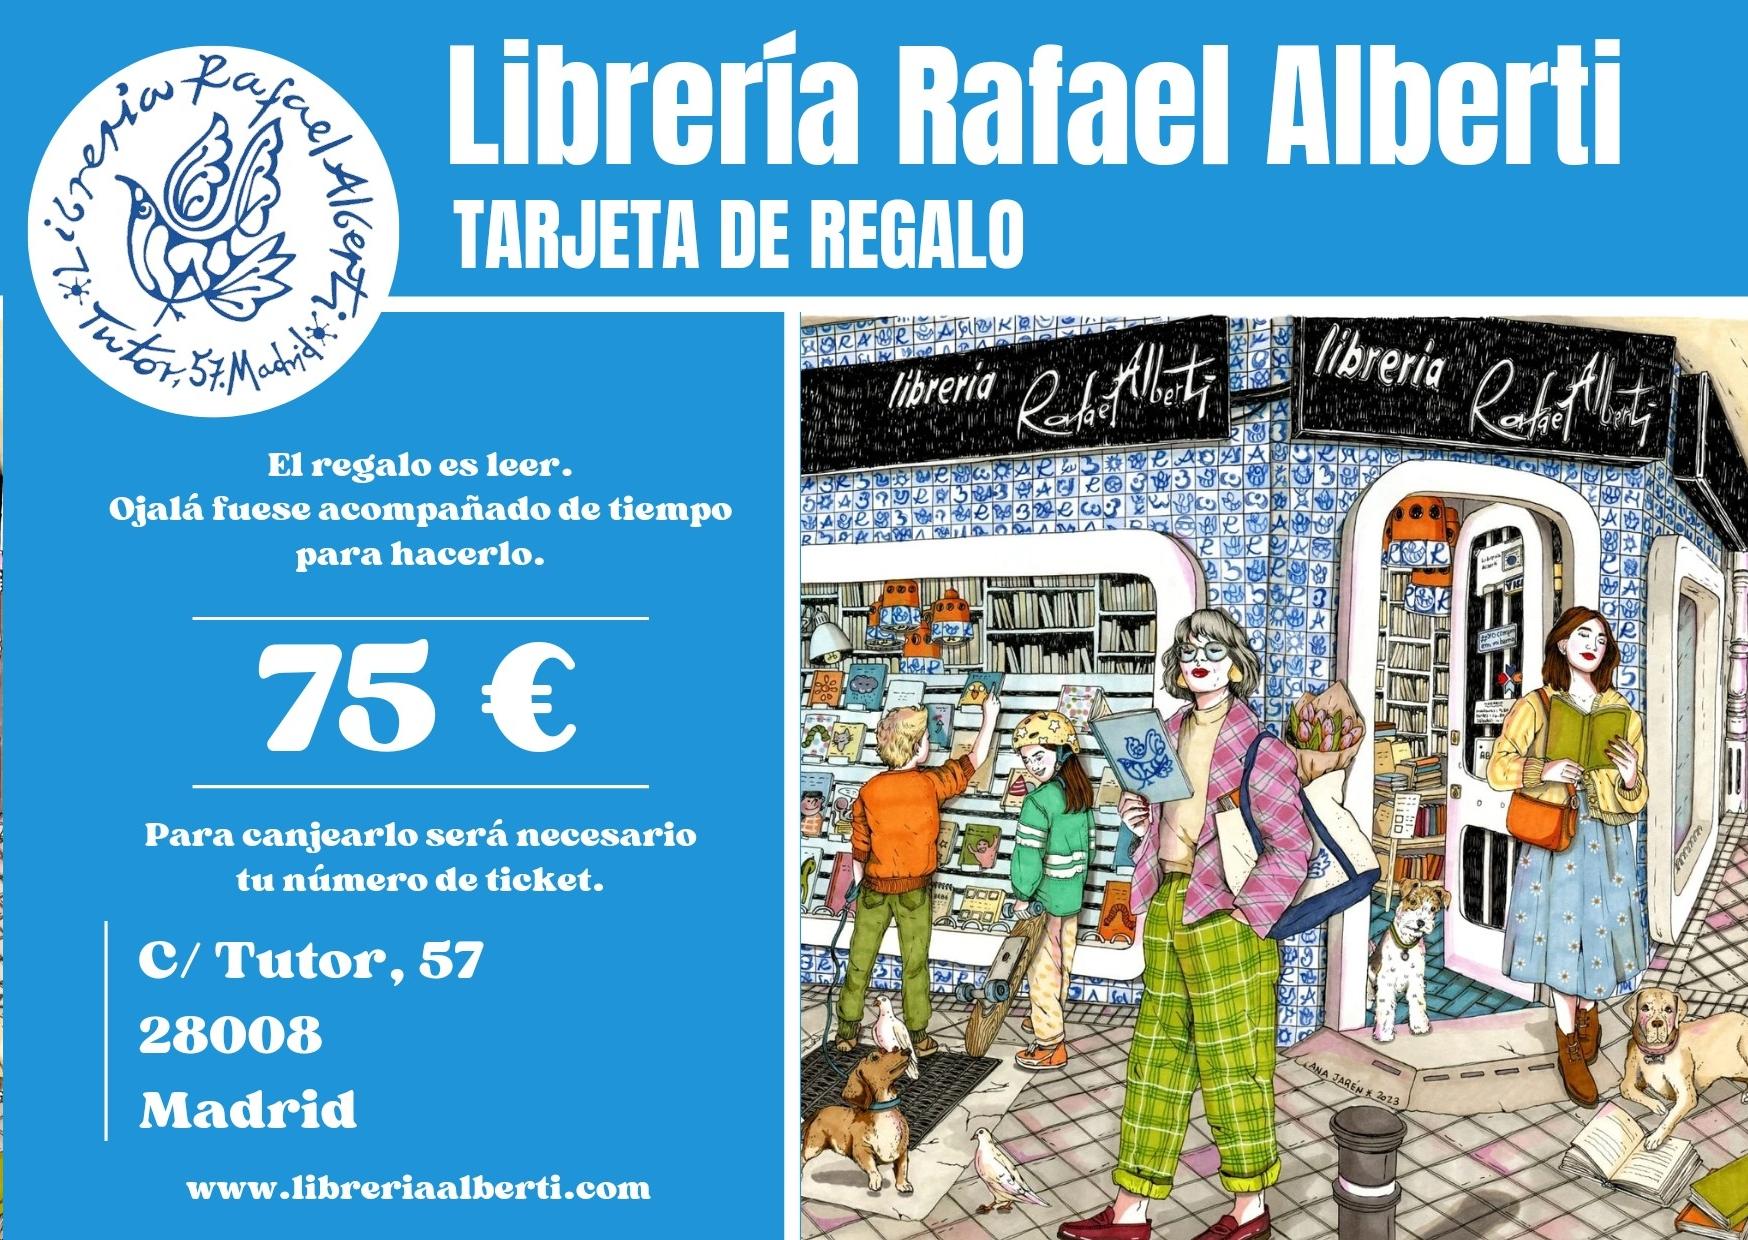 TARJETA REGALO ALBERTI 75 EUROS "El regalo es leer". 